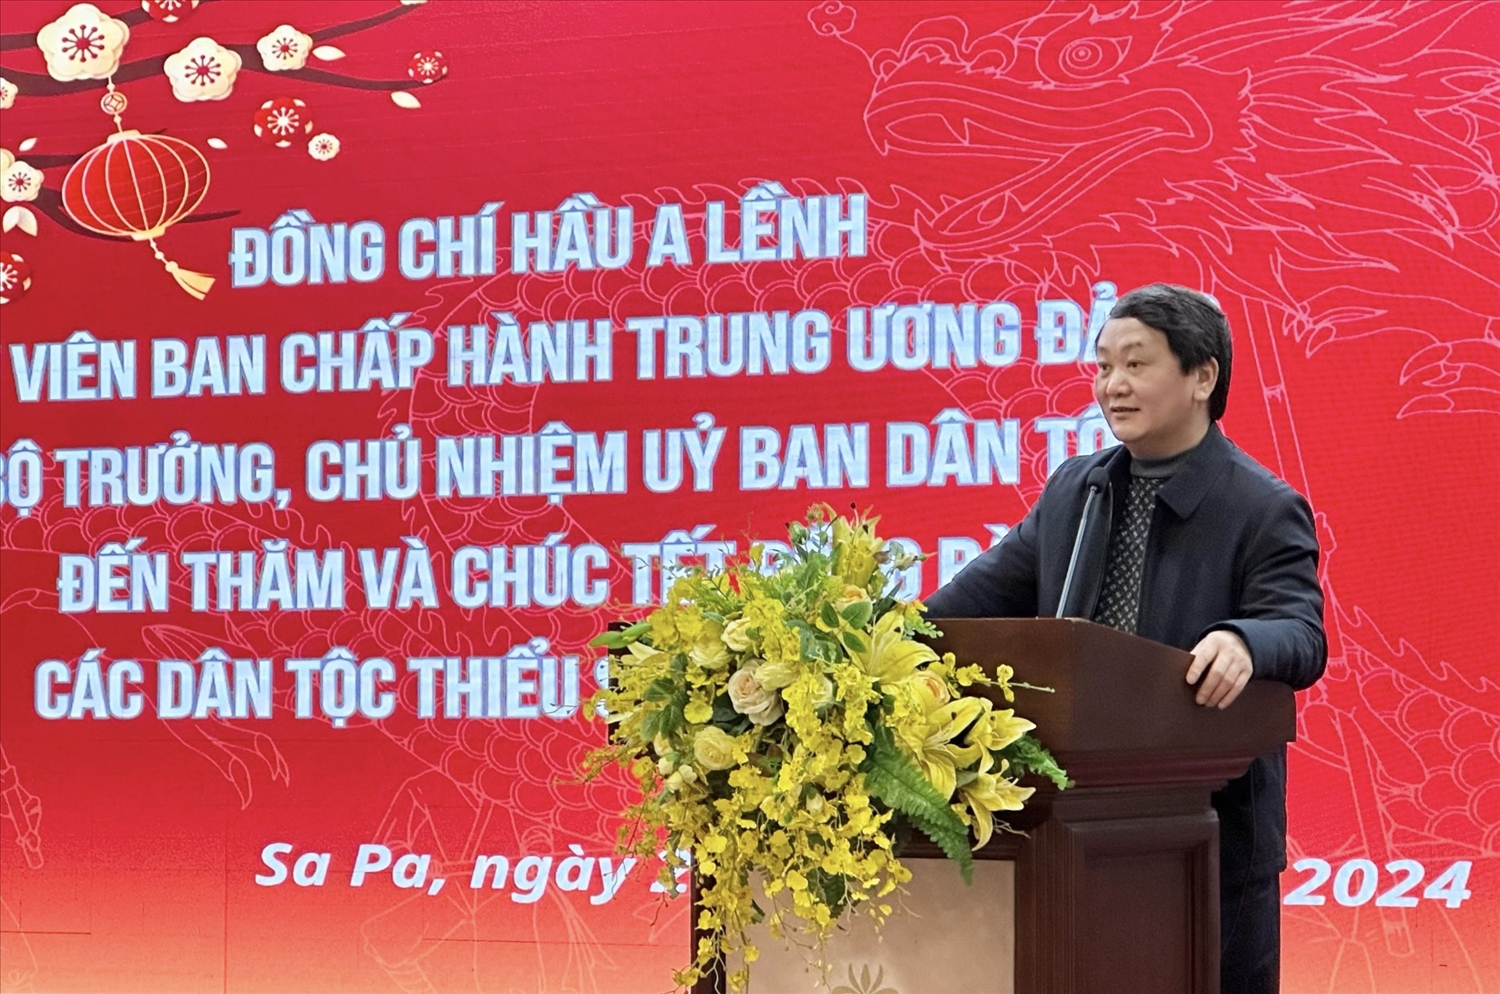 Nhân dịp năm mới, Bộ trưởng, Chủ nhiệm gửi lời chúc mừng tới Đảng bộ, chính quyền và Nhân dân tỉnh Lào Cai nói chung, thị xã Sa Pa nói riêng một năm mới với nhiều thắng lợi mới 